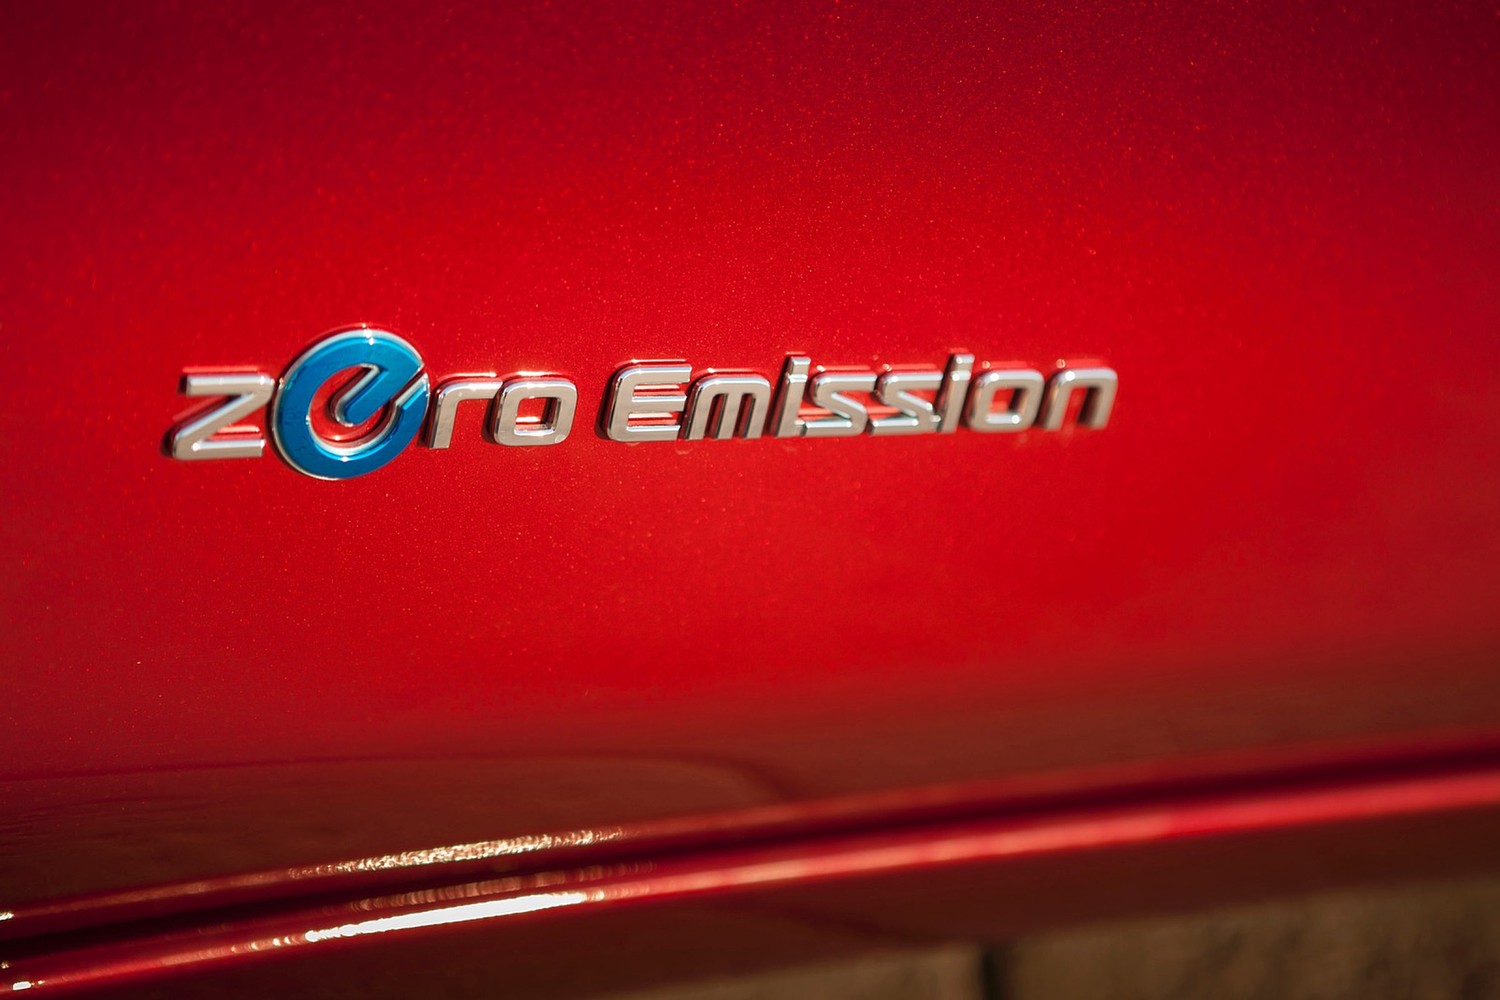 Nissan Leaf SL 4dr Hatchback Front Badge (2014 model year shown)